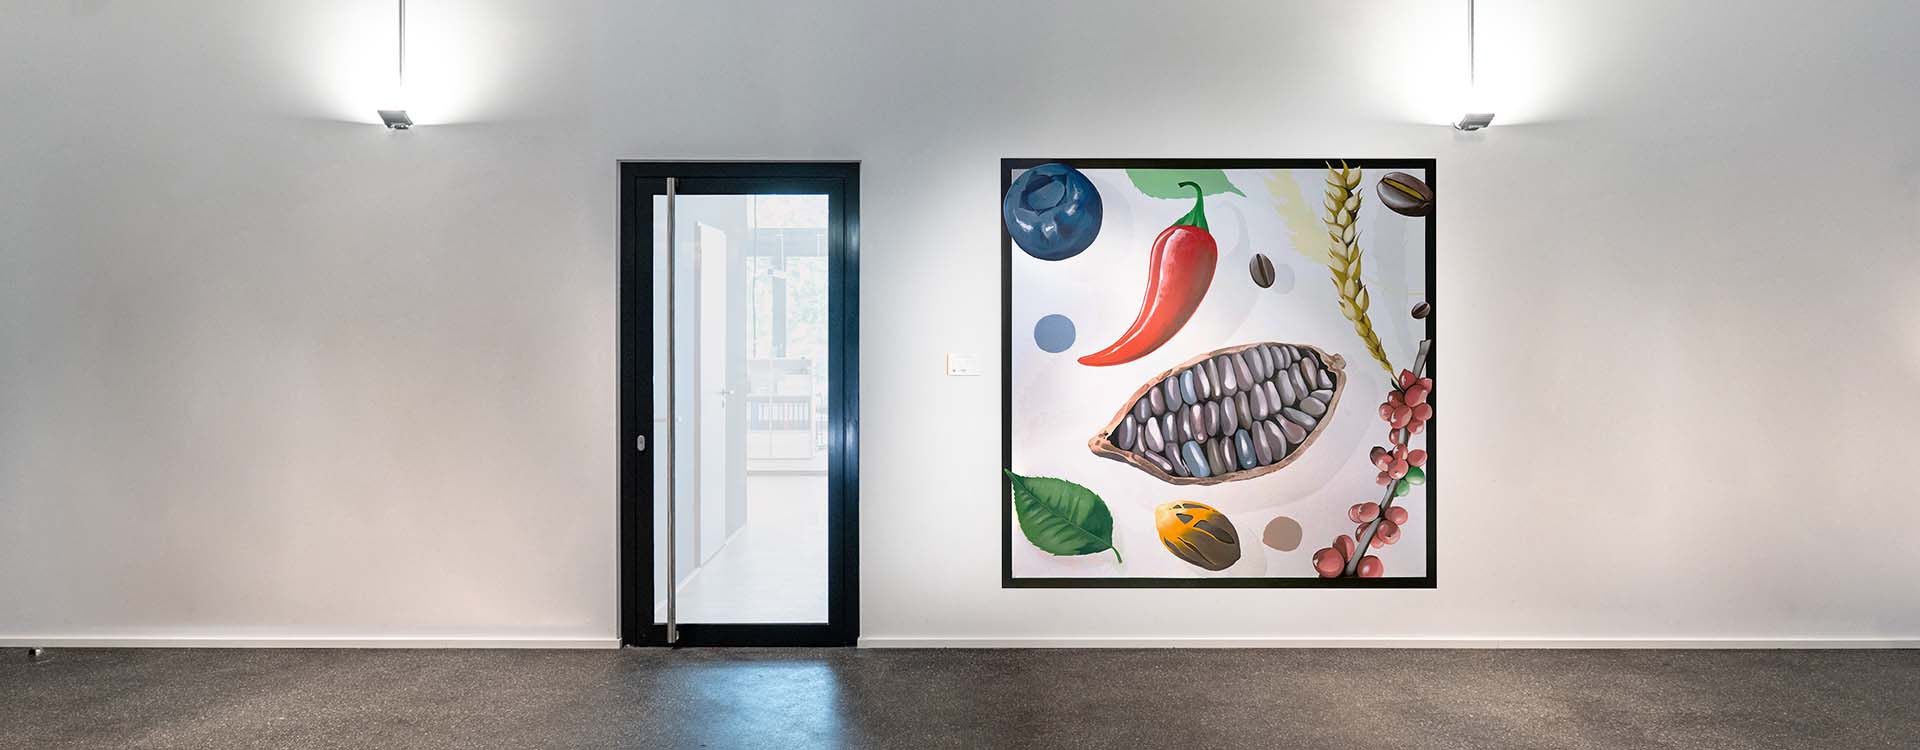 Tabakquartier Wandmalerei: Bild im Eingangsbereich mit verschiednen Lebensmitteln als Motiv.